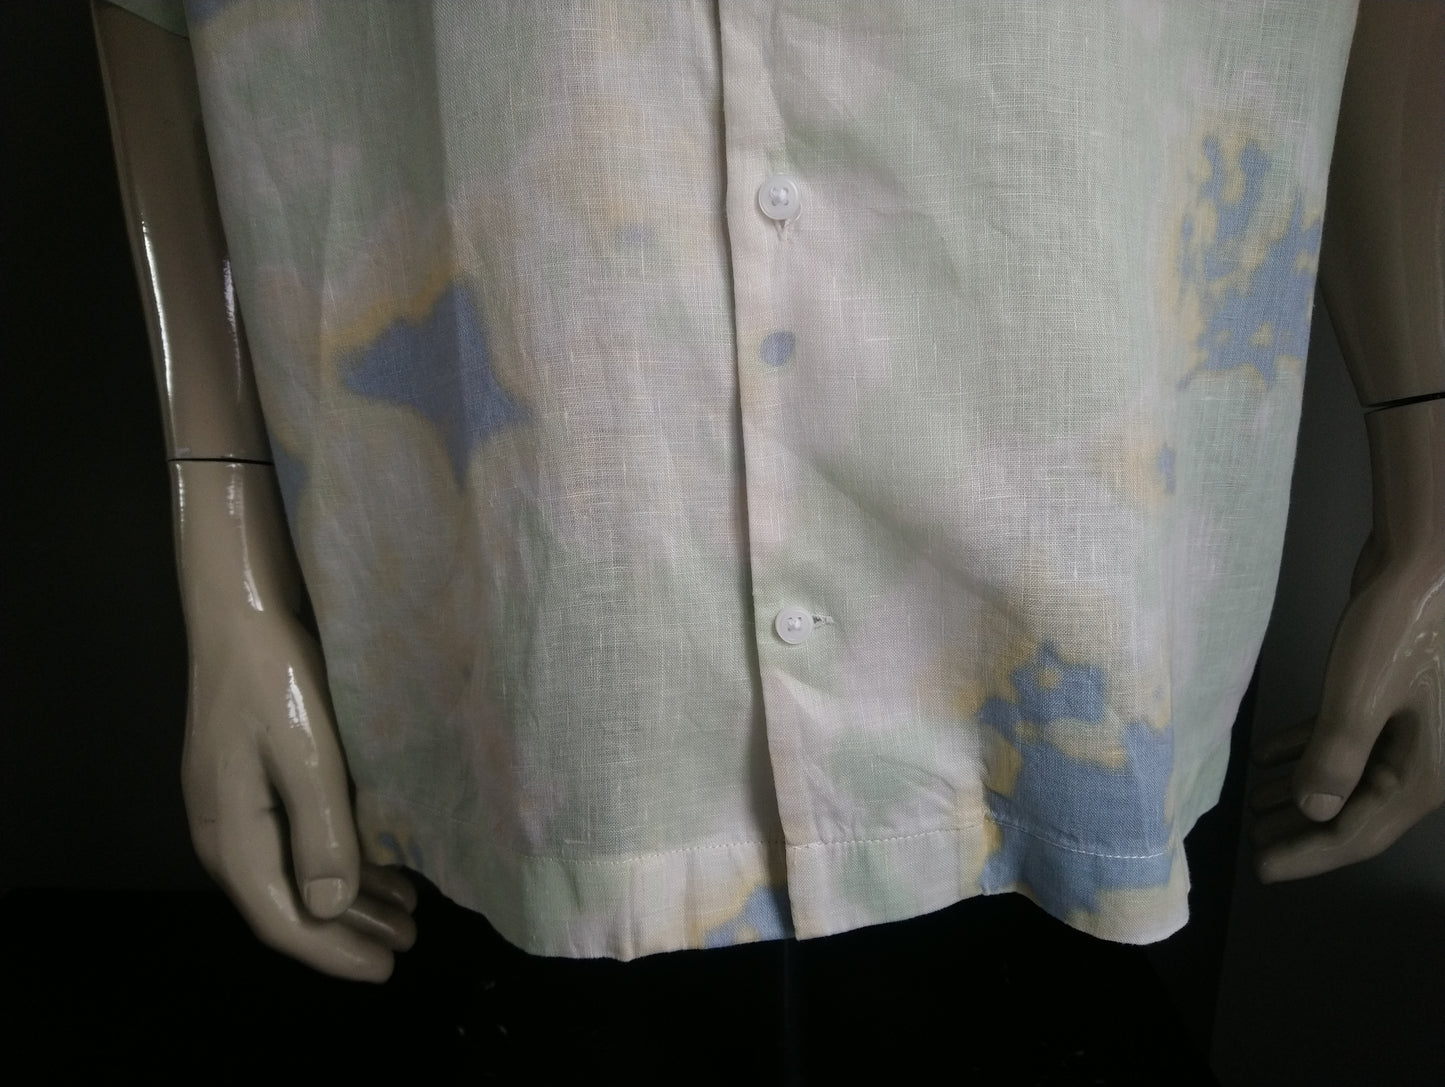 H & M Leinenhemd Kurzarm. Gelb blaugrün gefärbt. Größe 2xl / xxl. Entspannte Passform.